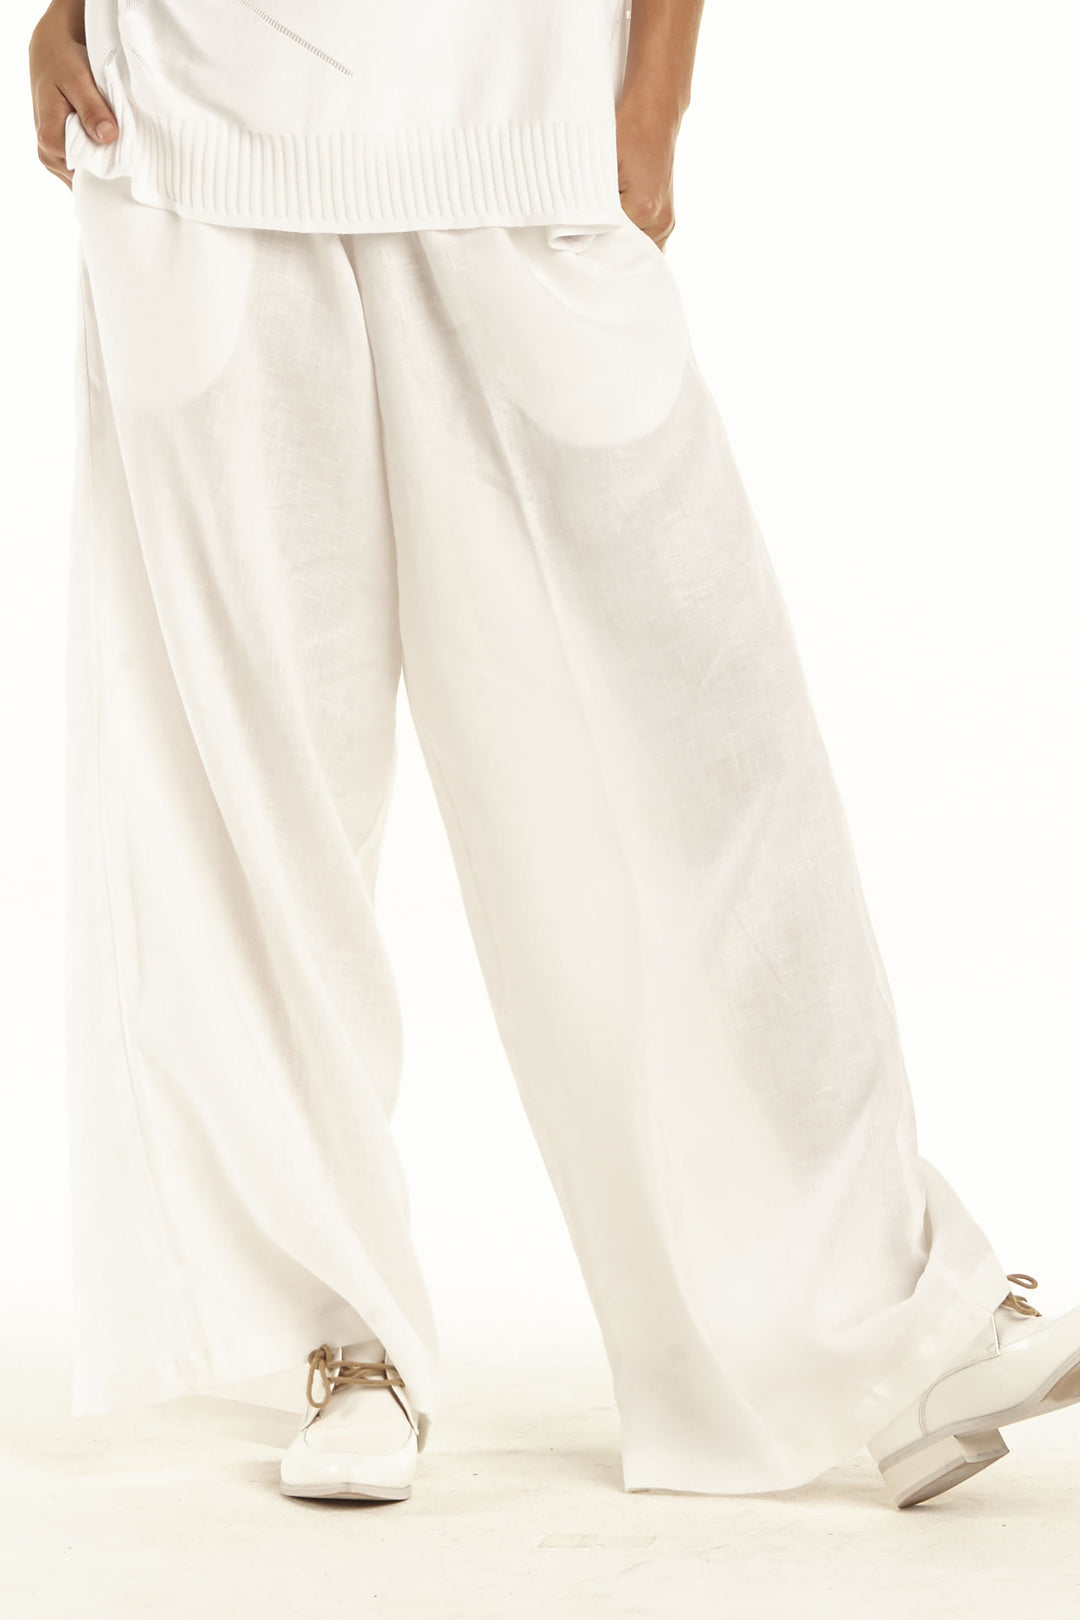 Washable Silk Sweatpants – PLANET by Lauren G